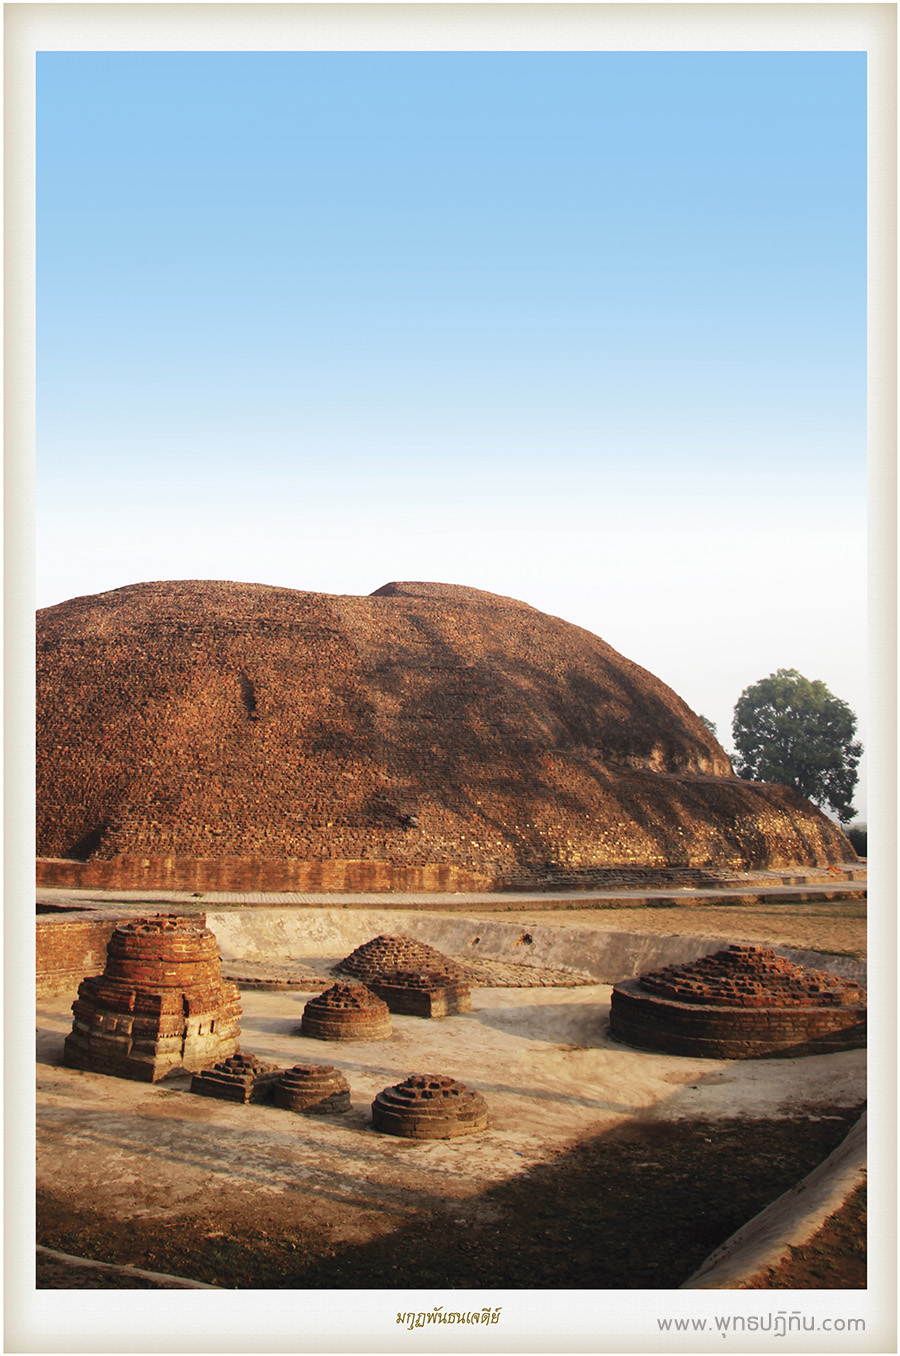 มกุฏพันธนเจดีย์ (ramabhar stupa)